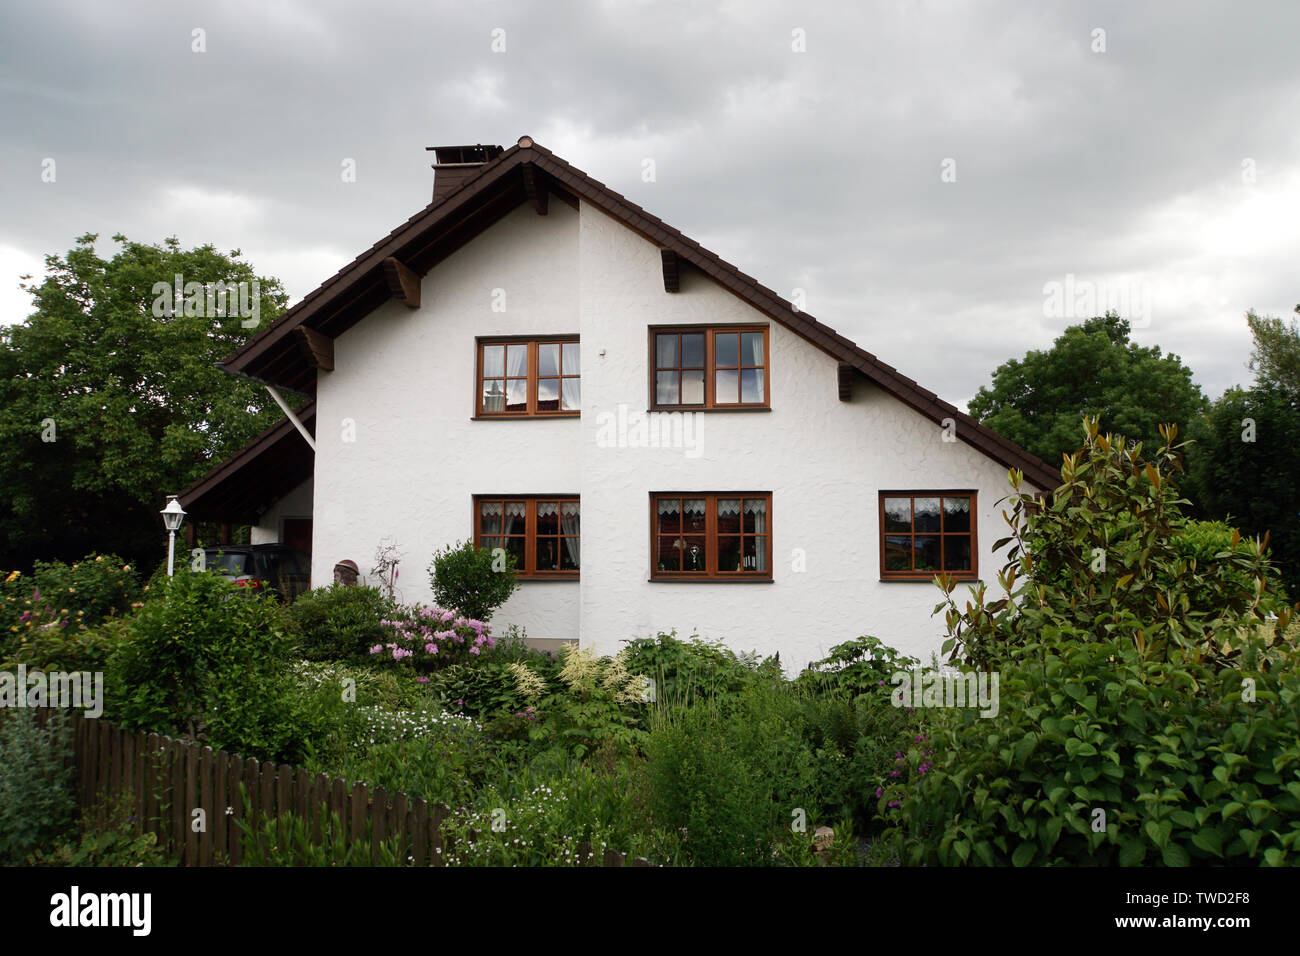 Einfamilienhaus im Landhaus-Stil Stock Photo